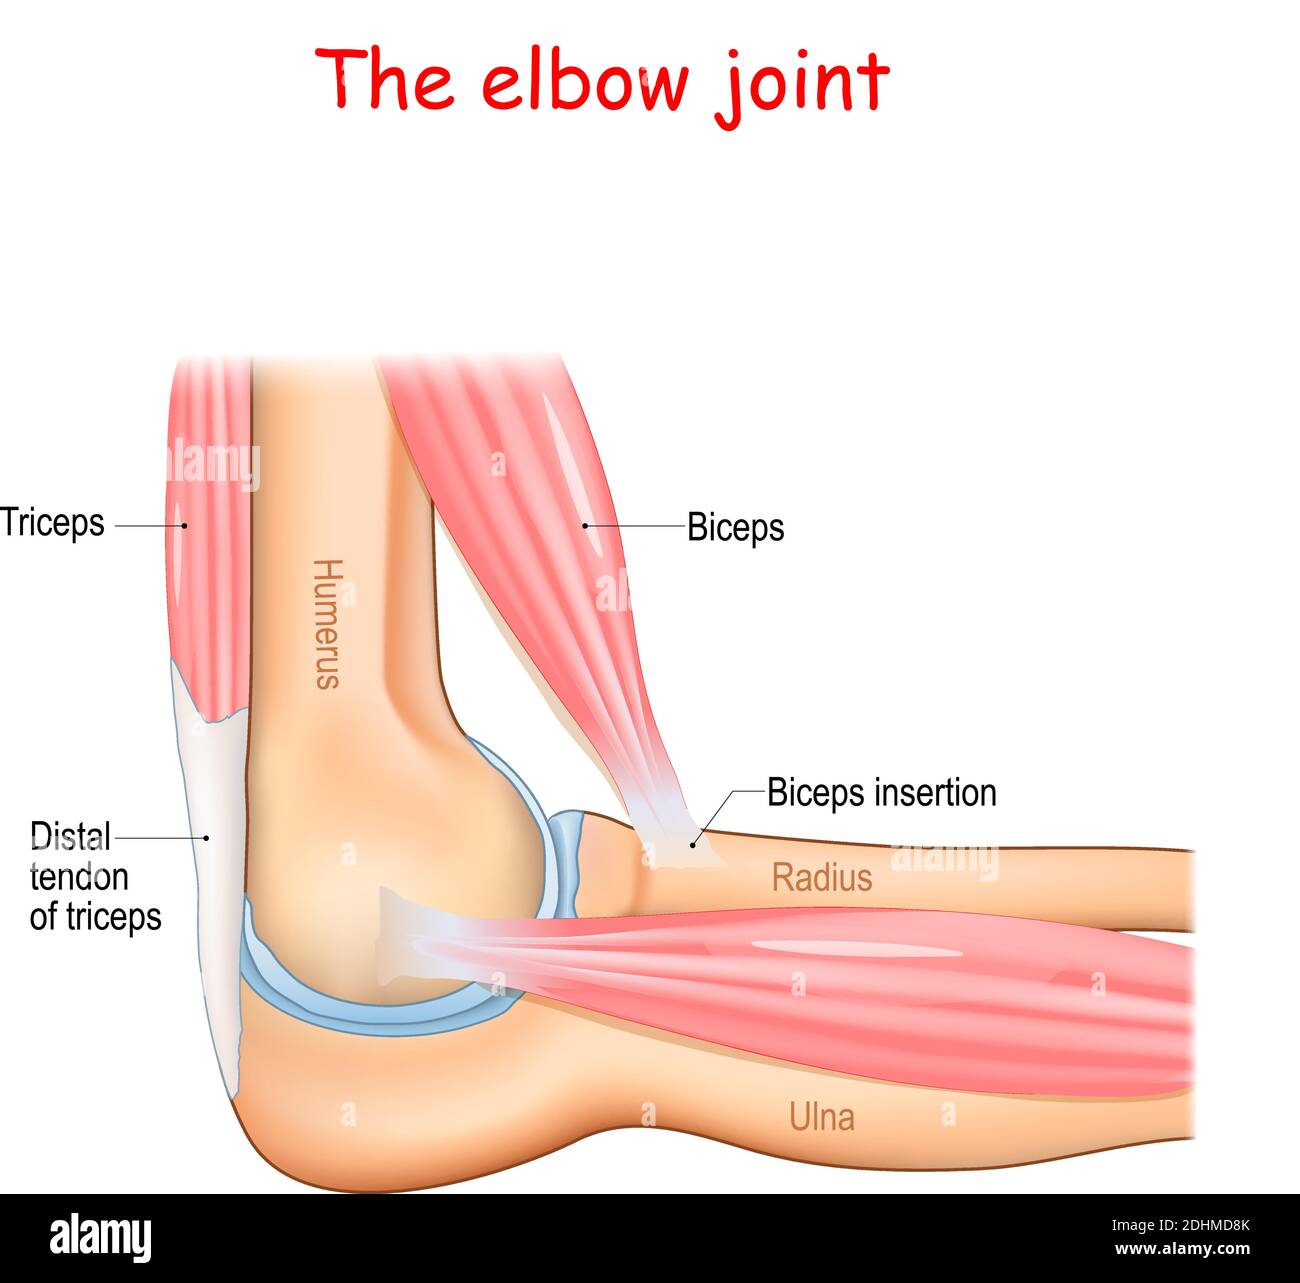 Anatomie eines Ellenbogengelenks. Teile des Armes. Knochen (Humerus, Radius, Ulna) Muskel (Trizeps, Bizeps) und distale Sehne des Trizeps. Stock Vektor